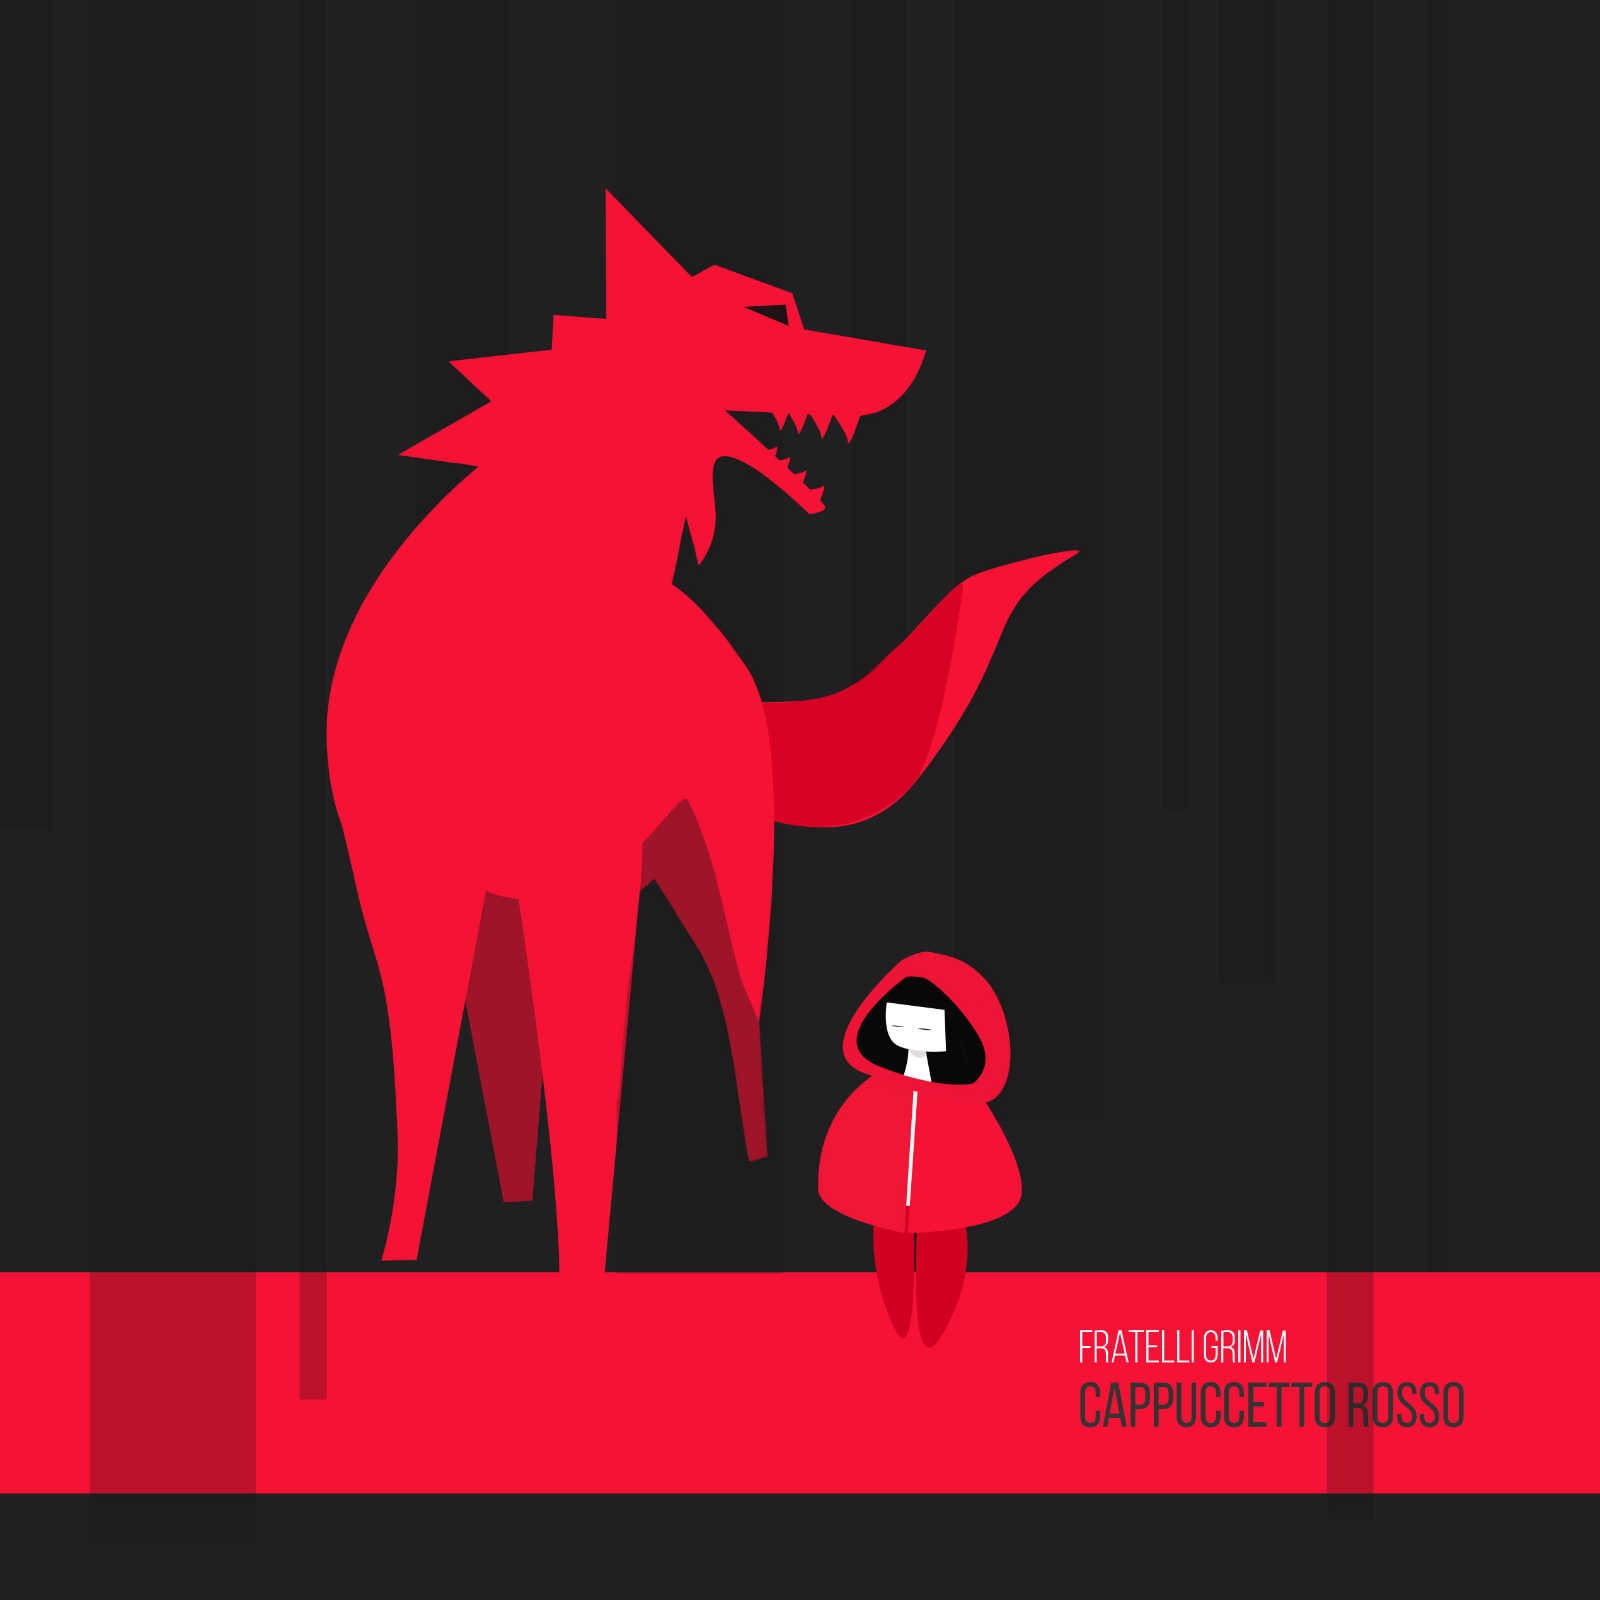 copertina di un libro raffigurante Cappuccetto rosso e il lupo